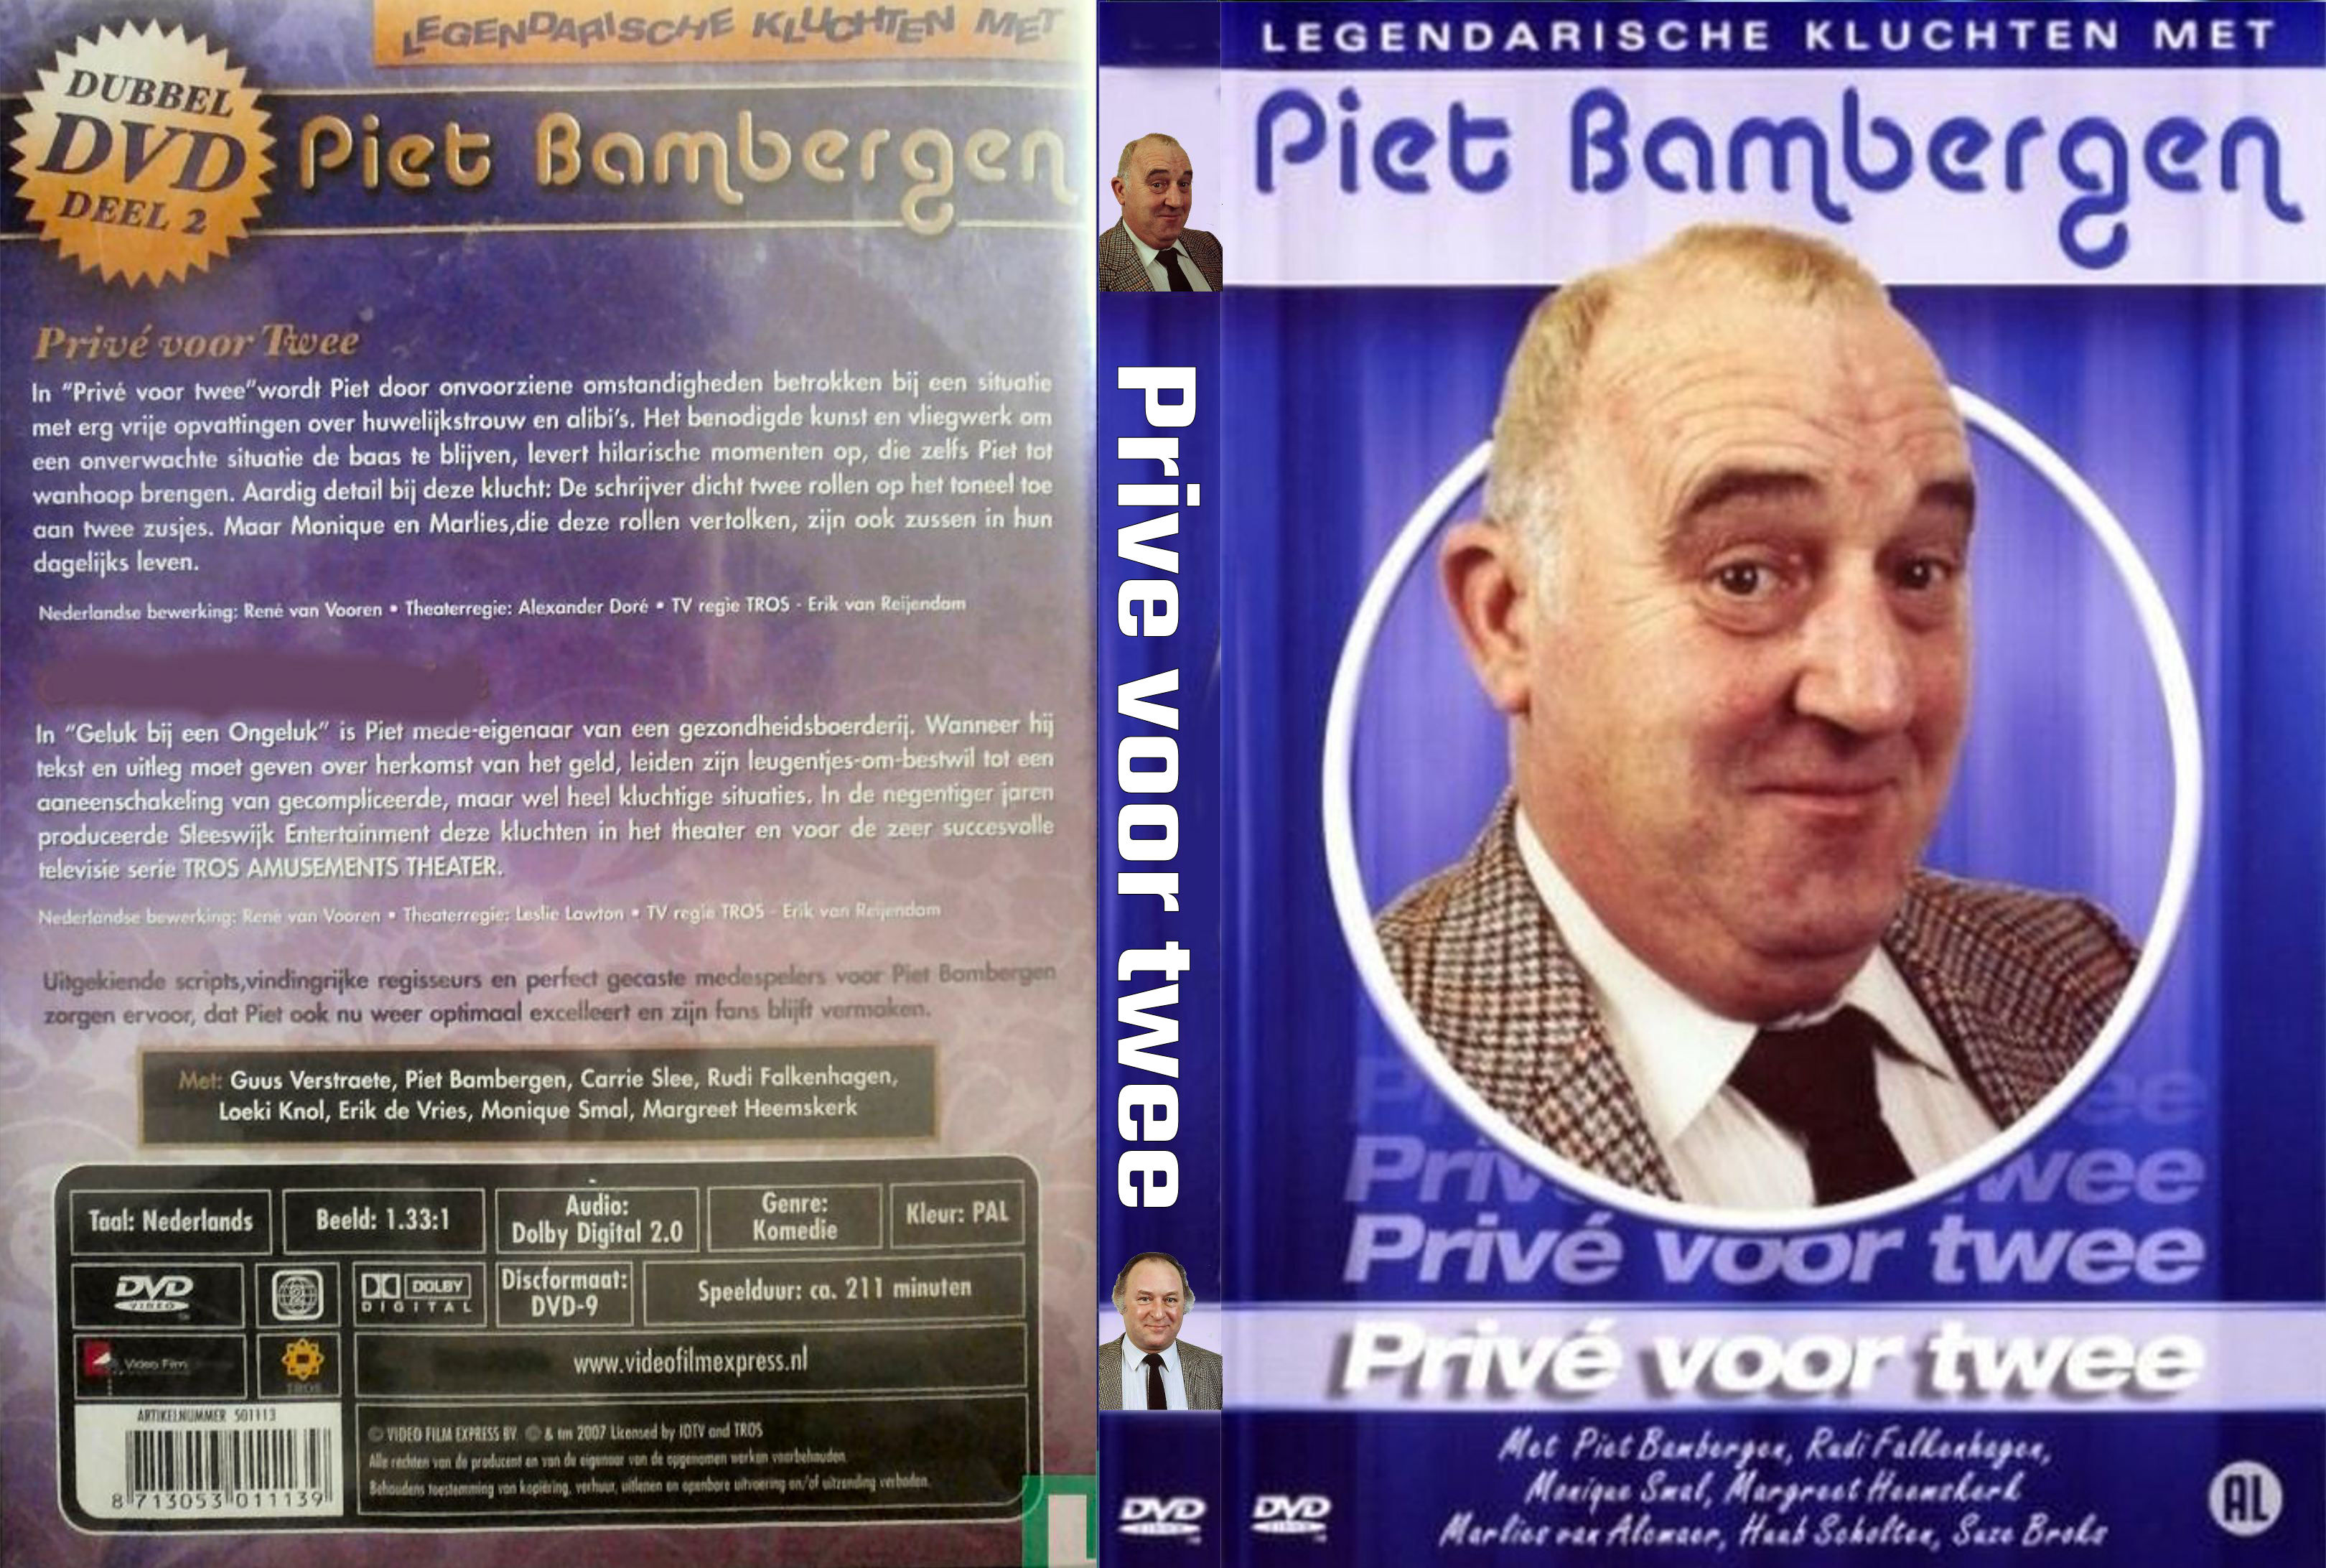 Piet Bambergen - Prive voor twee (1988)